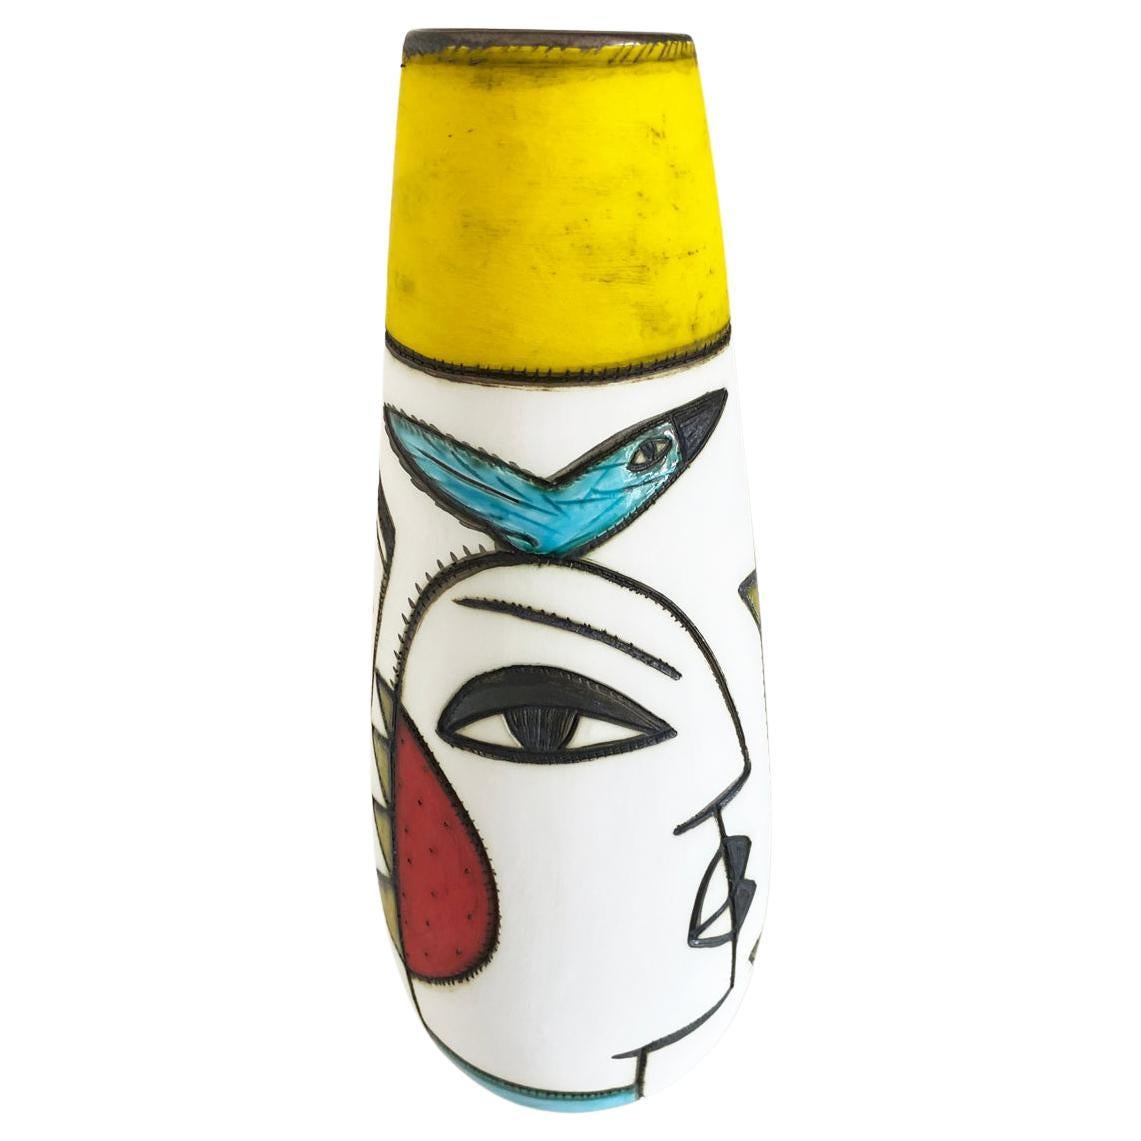 Un vase à face conique en poterie de la céramiste sud-africaine Charmaine Haines, largement collectionnée, produite en 2020.


Charmaine Haines est née en 1963 à Grahamstown et a suivi la formation de Hylton Nel au Technikon de Port Elizabeth.